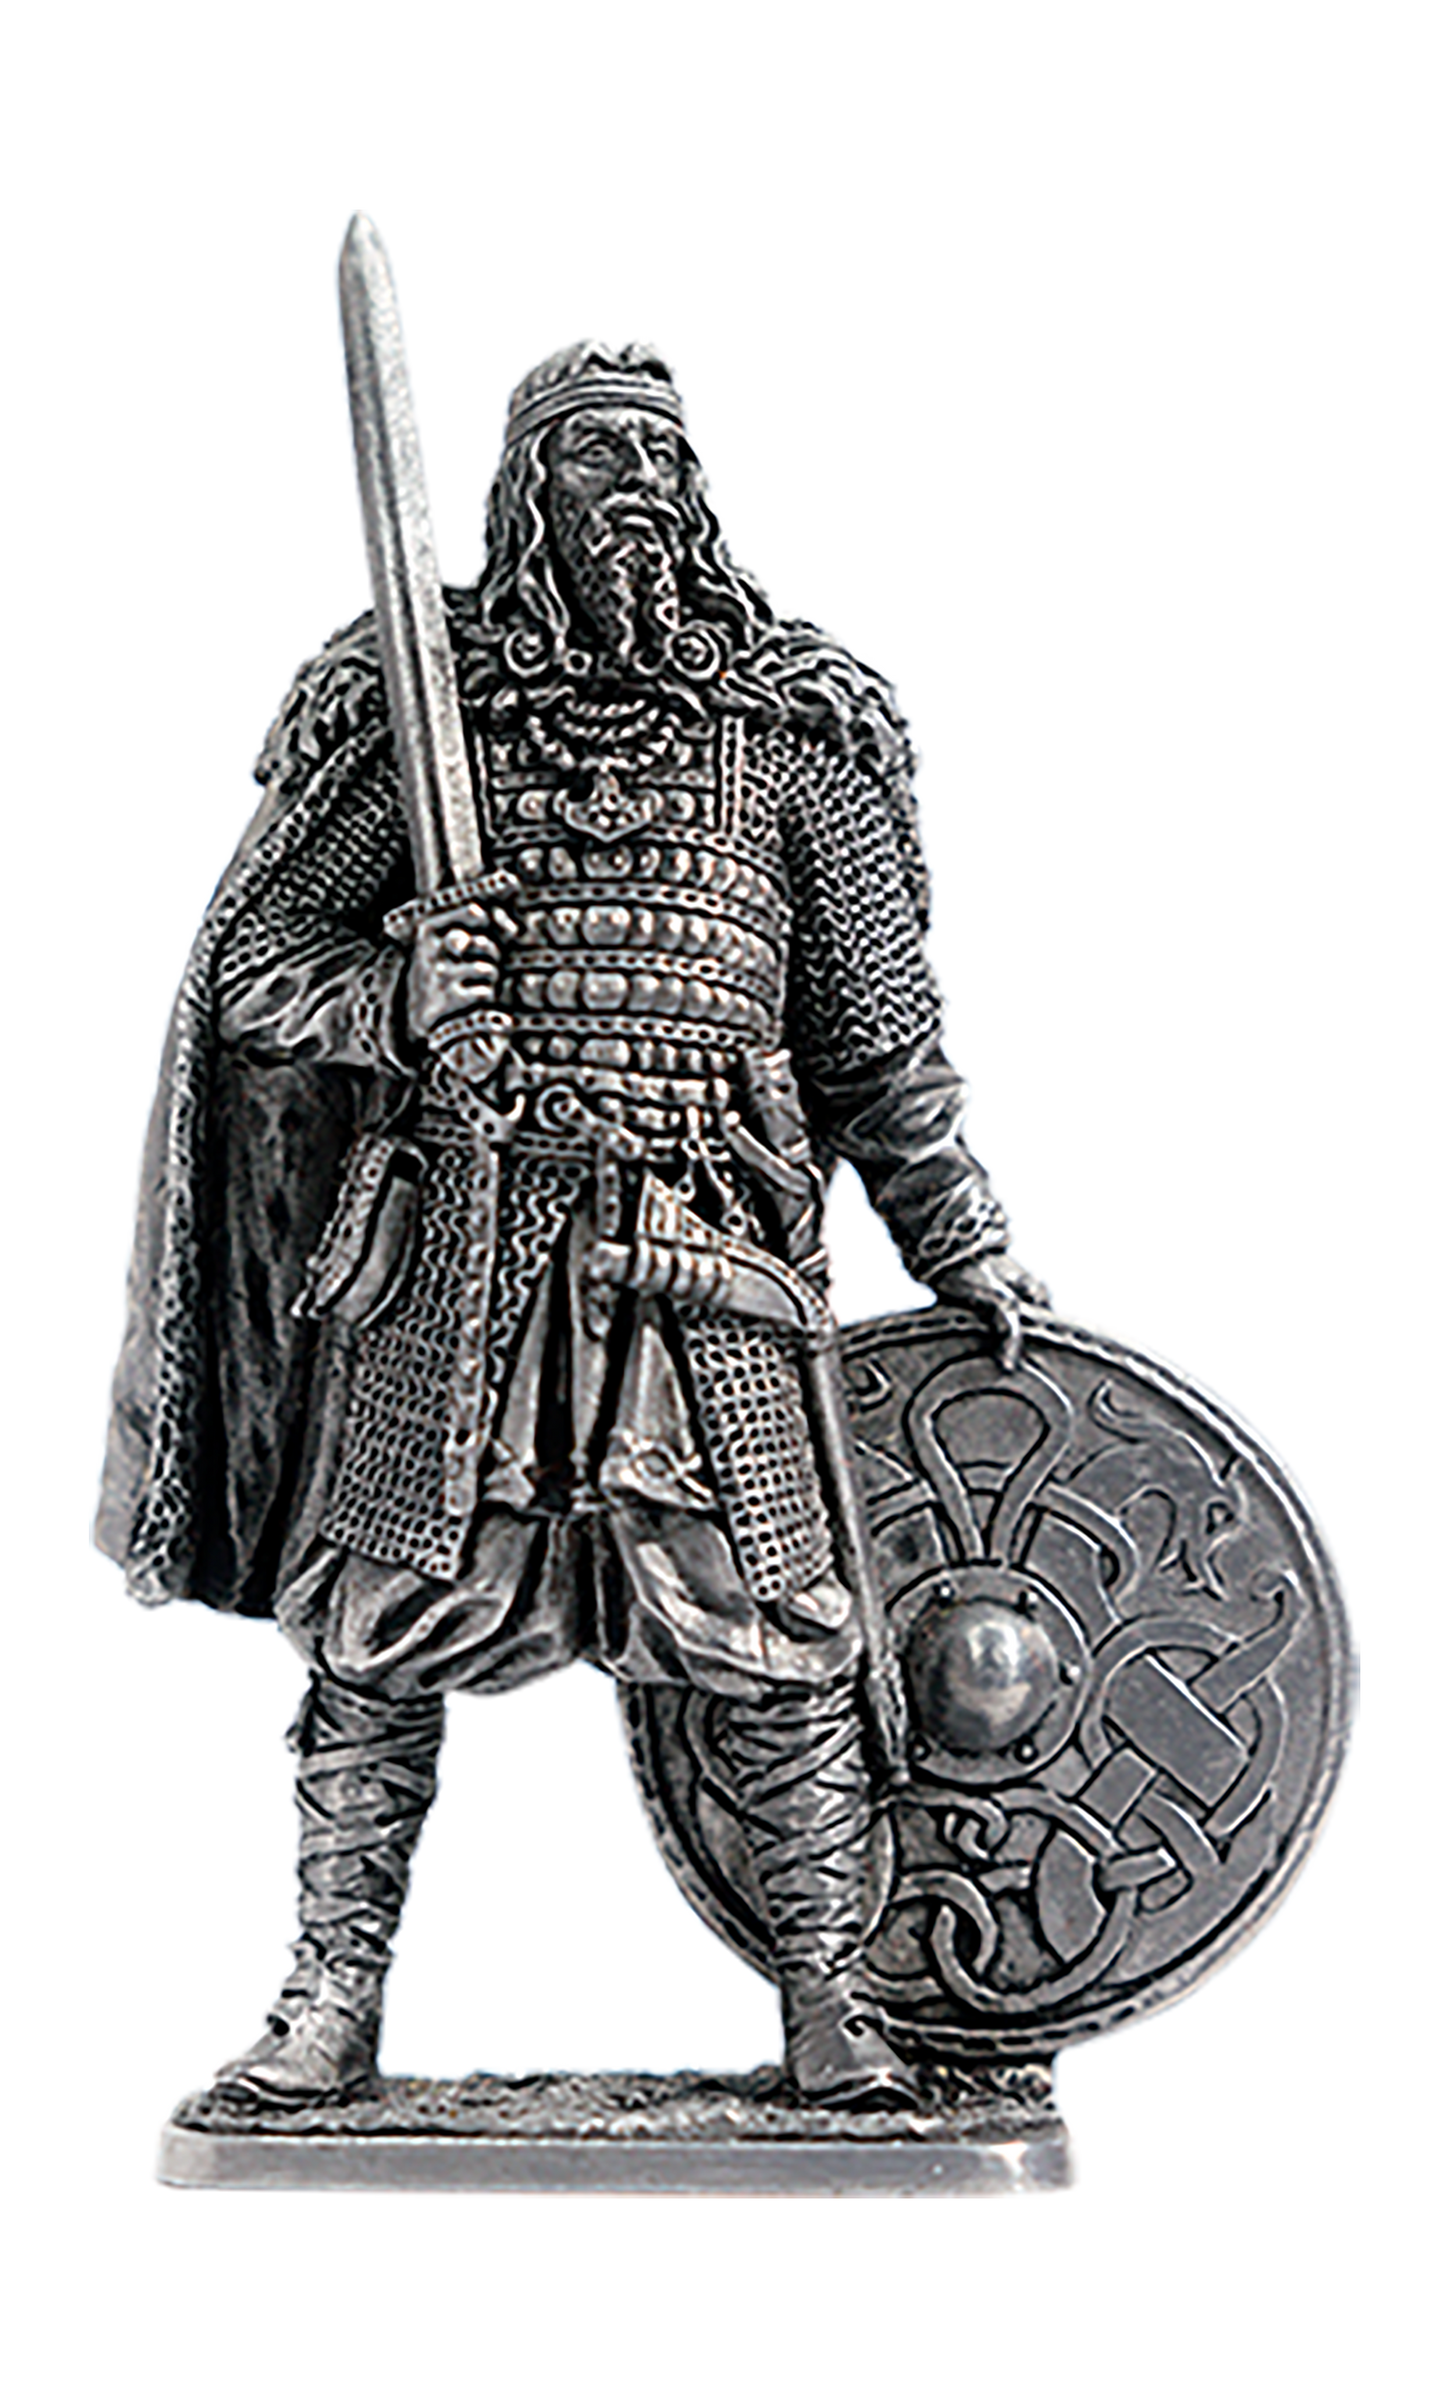 EK-M295 - Рюрик - первый правитель Древней Руси, Новгородский князь (862-879 гг.)